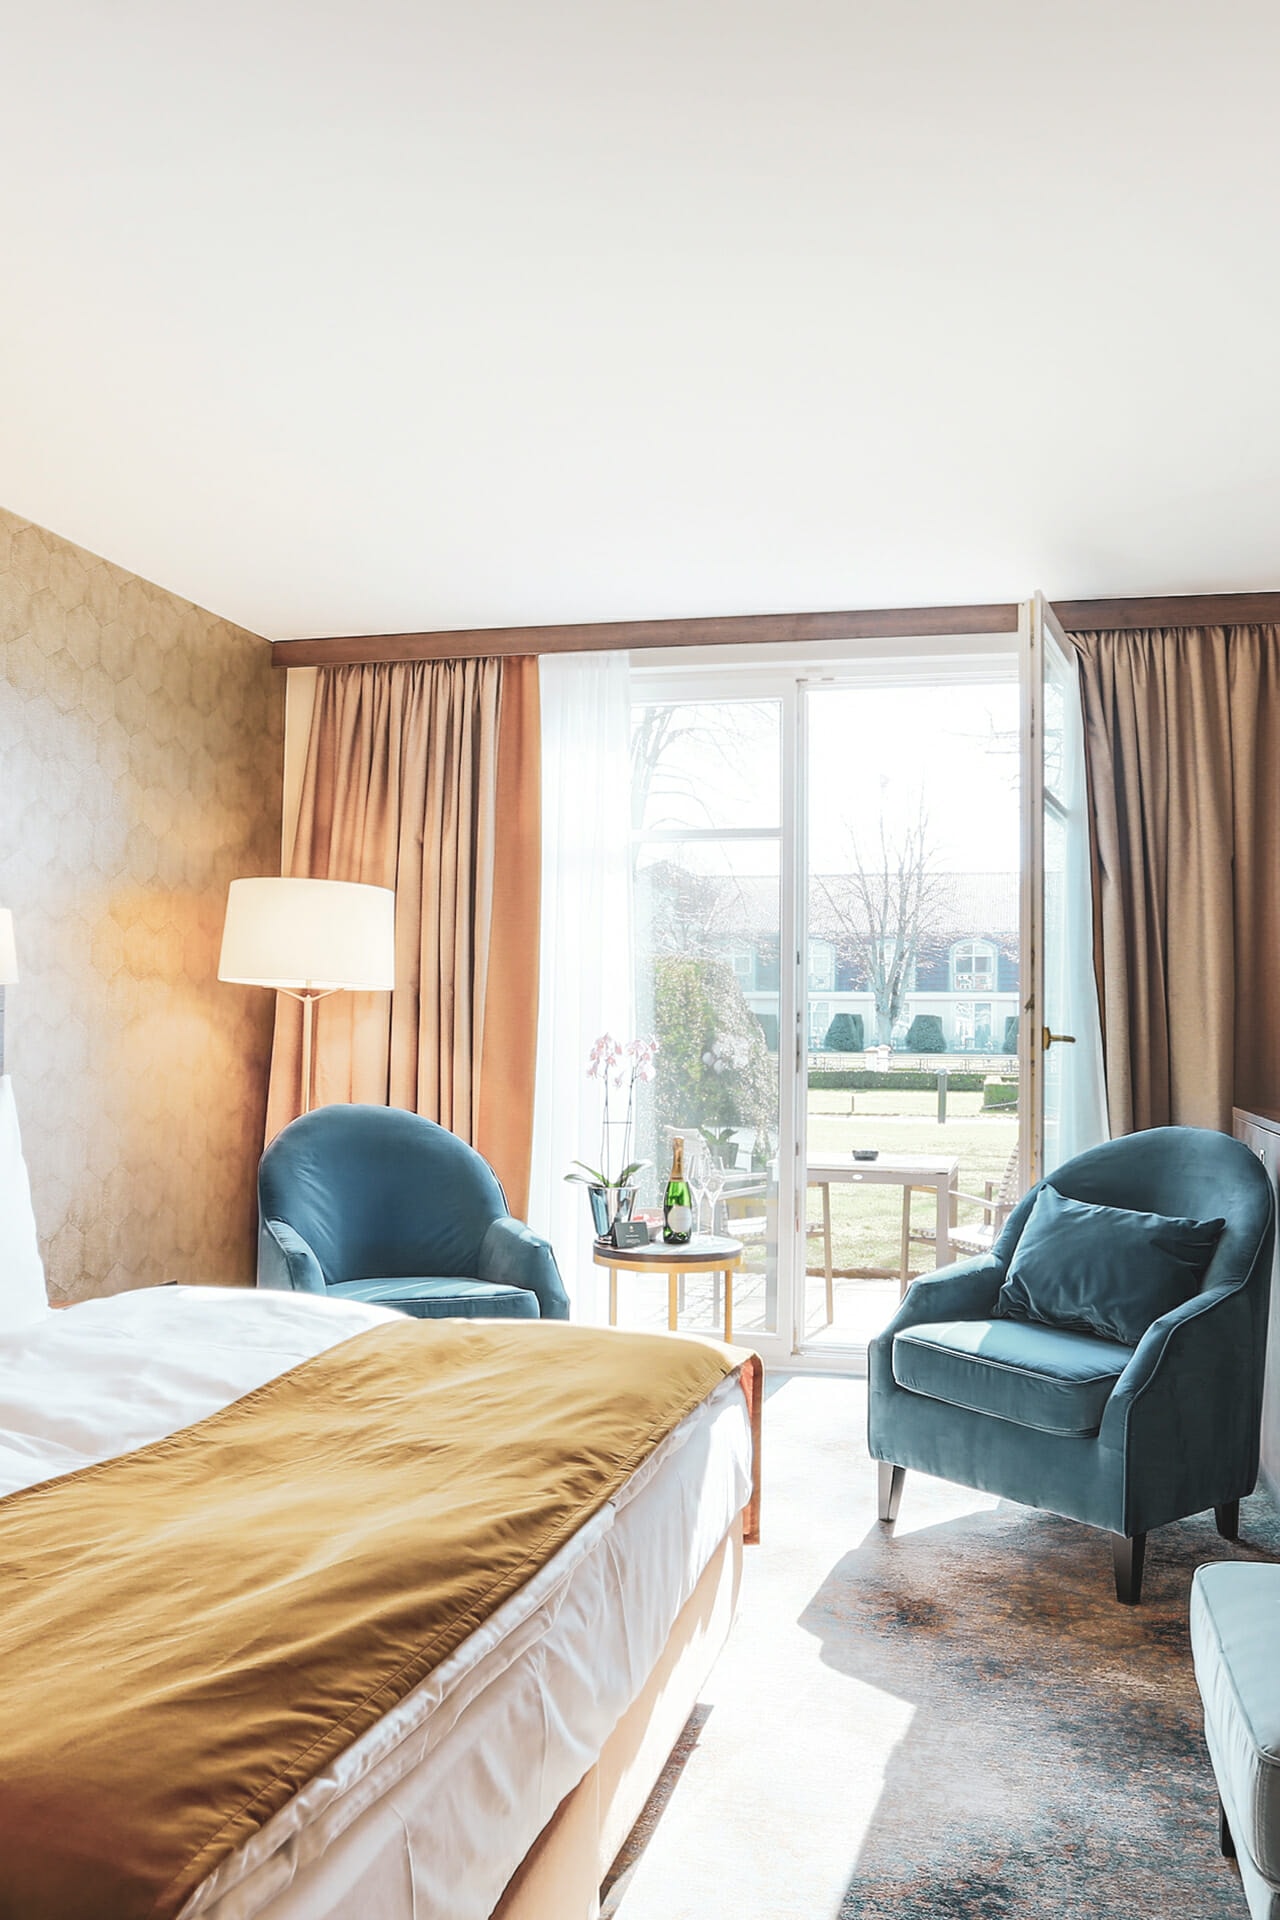 Bett und Terrasse im Deluxe Zimmer im Schlosshotel Fleesensee.